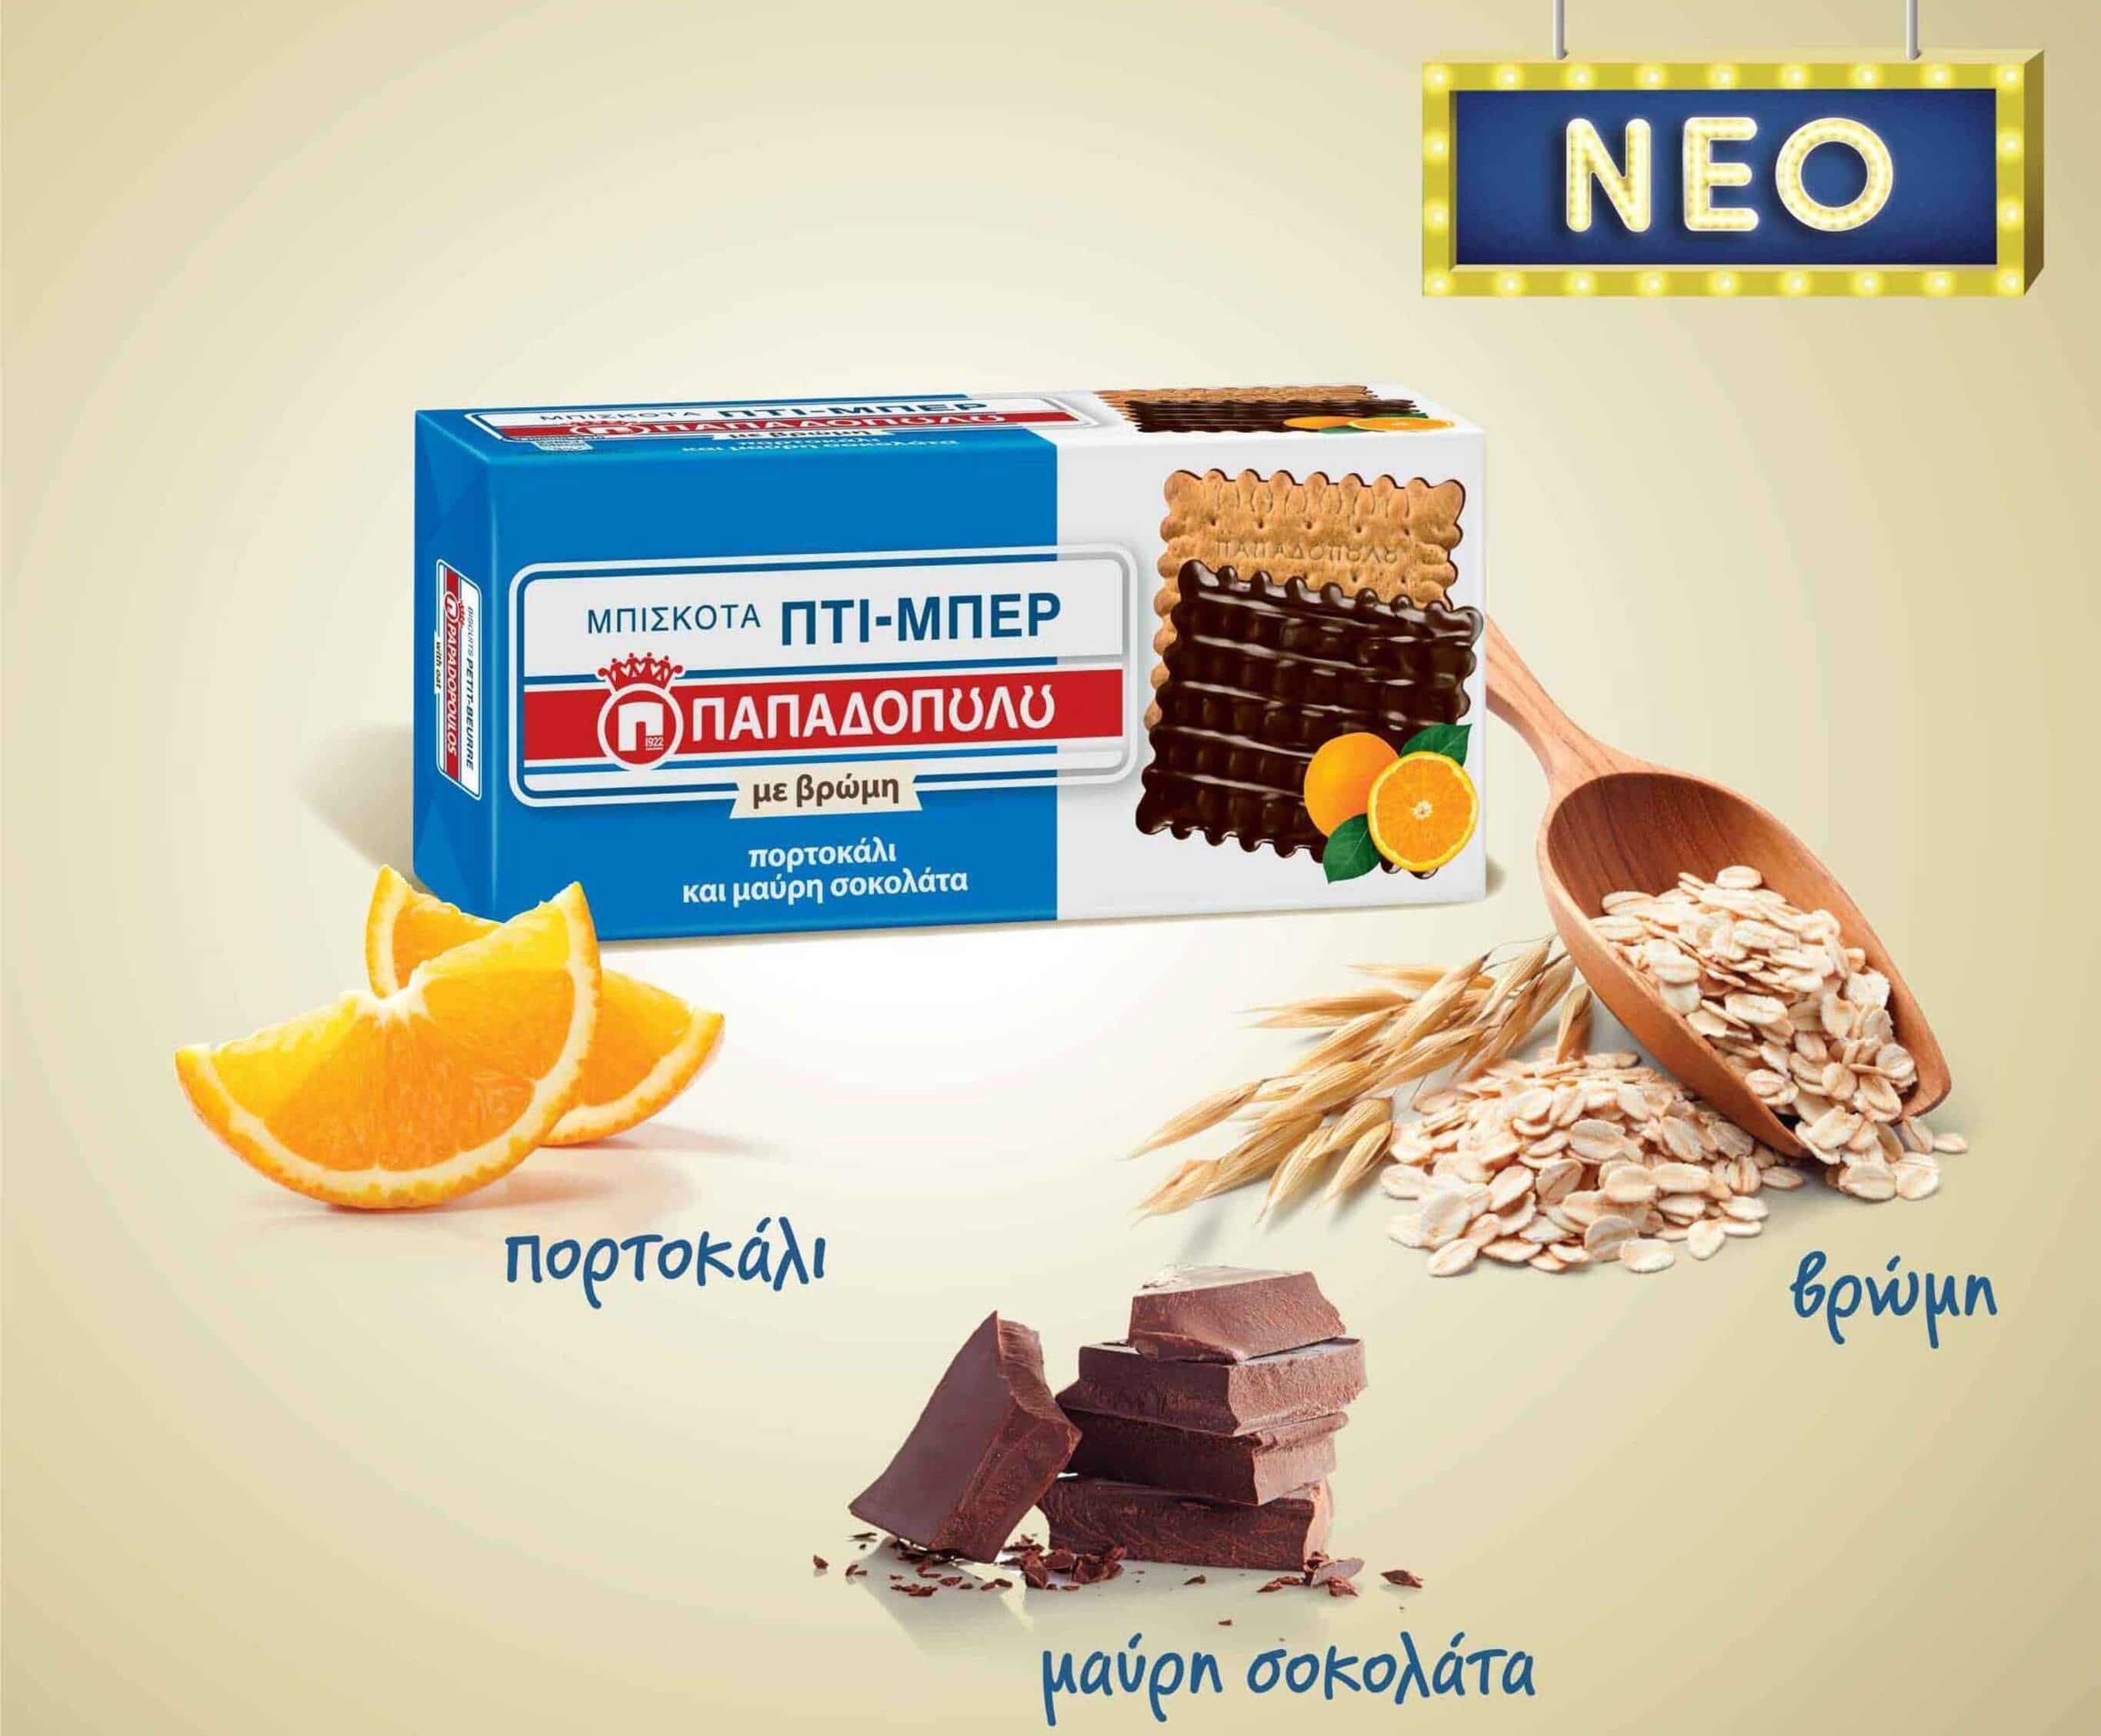 image for Nέα Πτι-Μπερ Παπαδοπούλου με βρώμη, πορτοκάλι και μαύρη σοκολάτα.